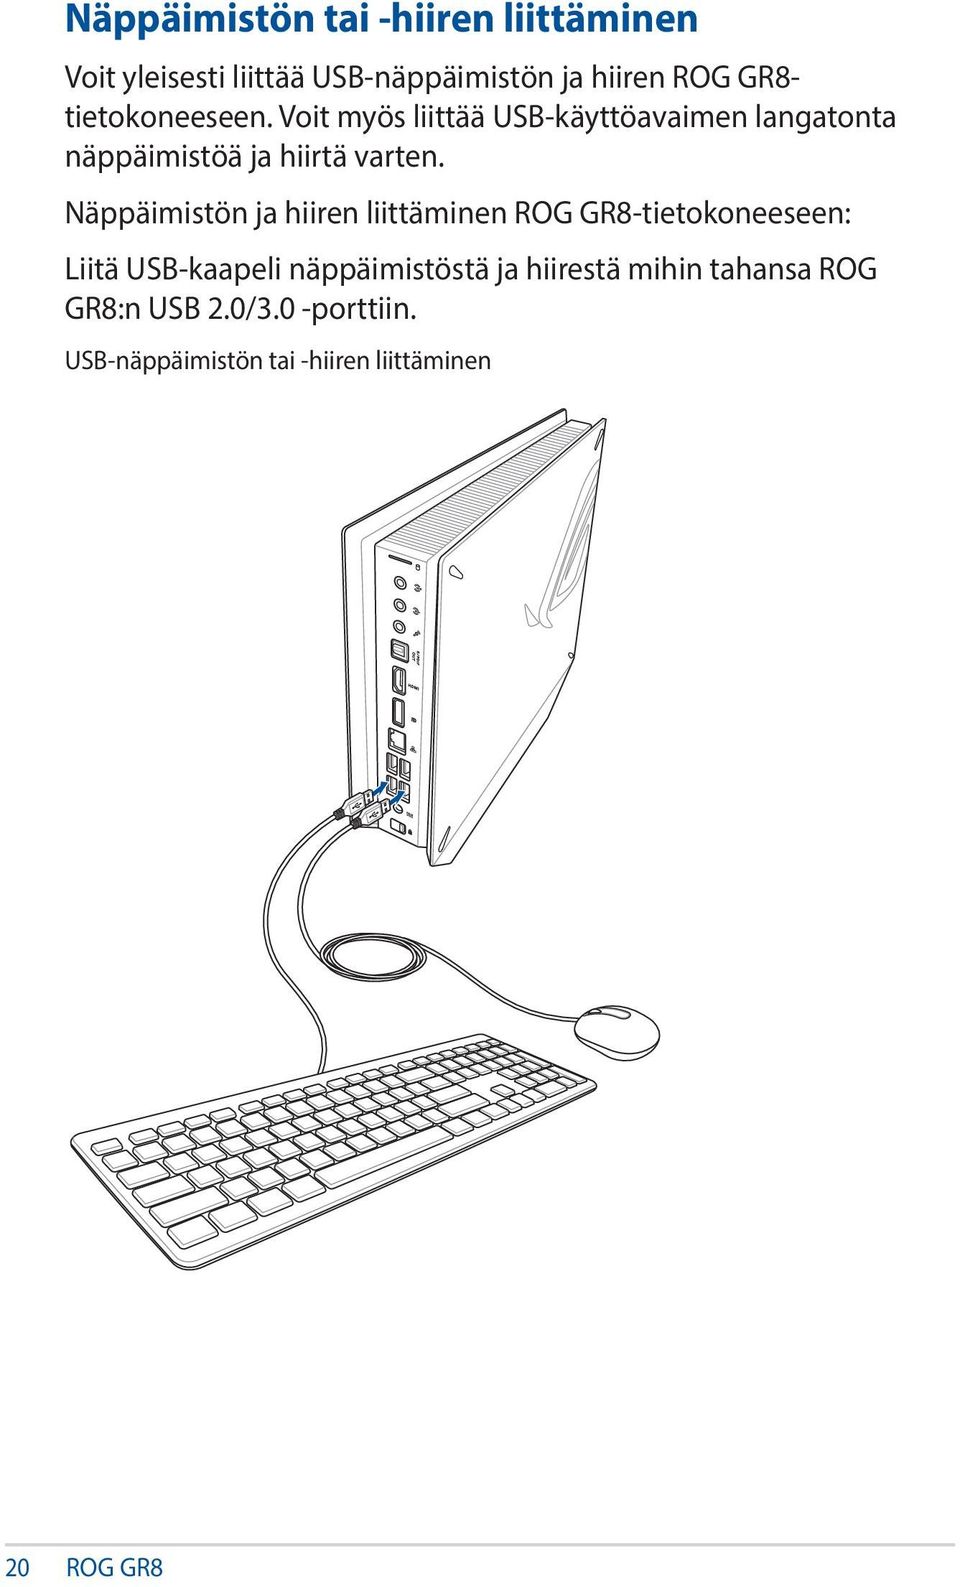 Näppäimistön ja hiiren liittäminen ROG GR8-tietokoneeseen: Liitä USB-kaapeli näppäimistöstä ja